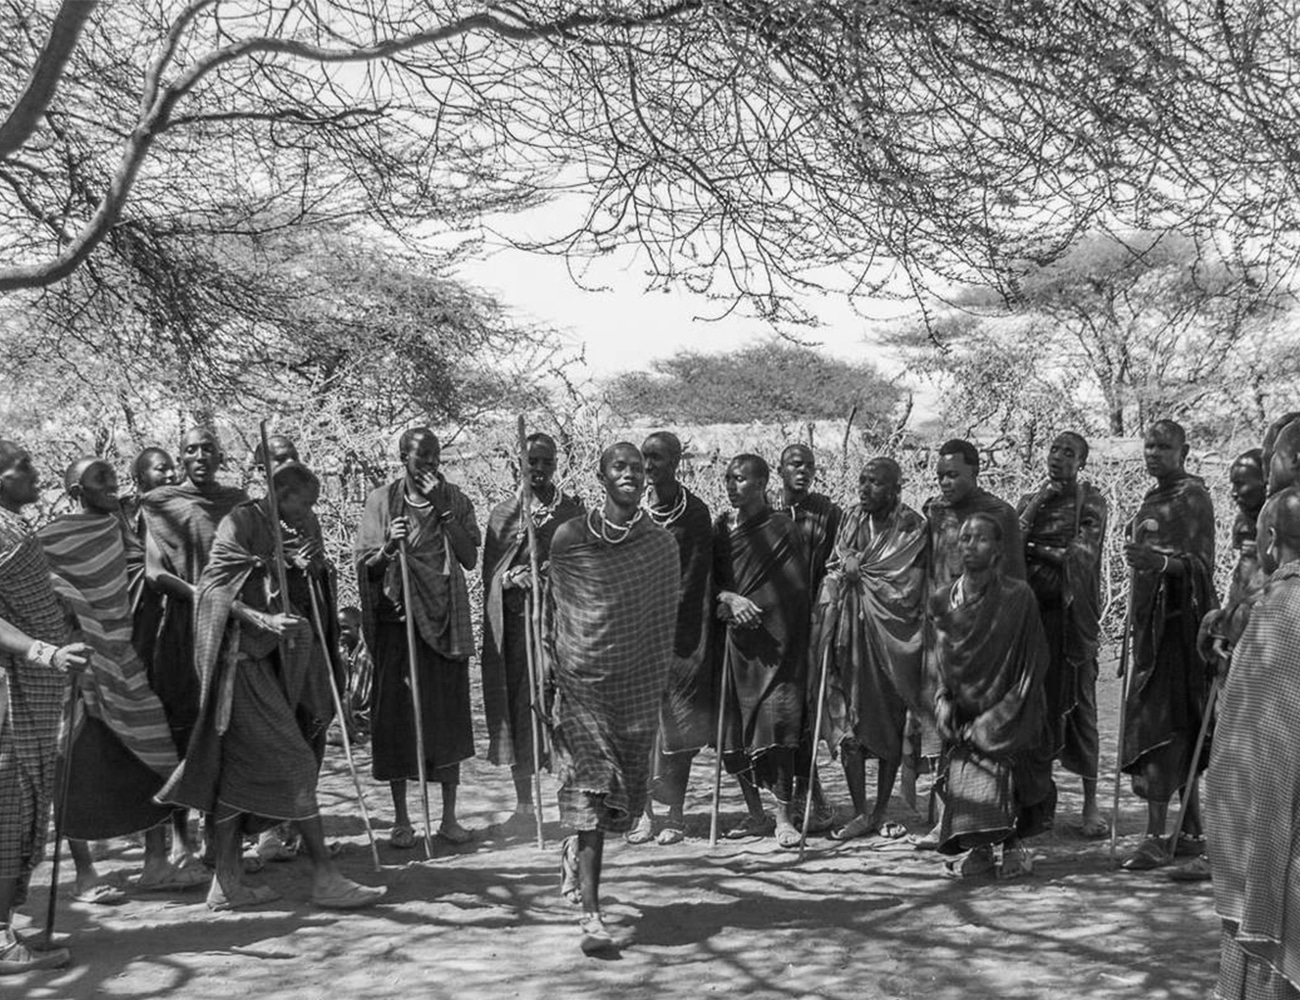 Maasai Village Tour